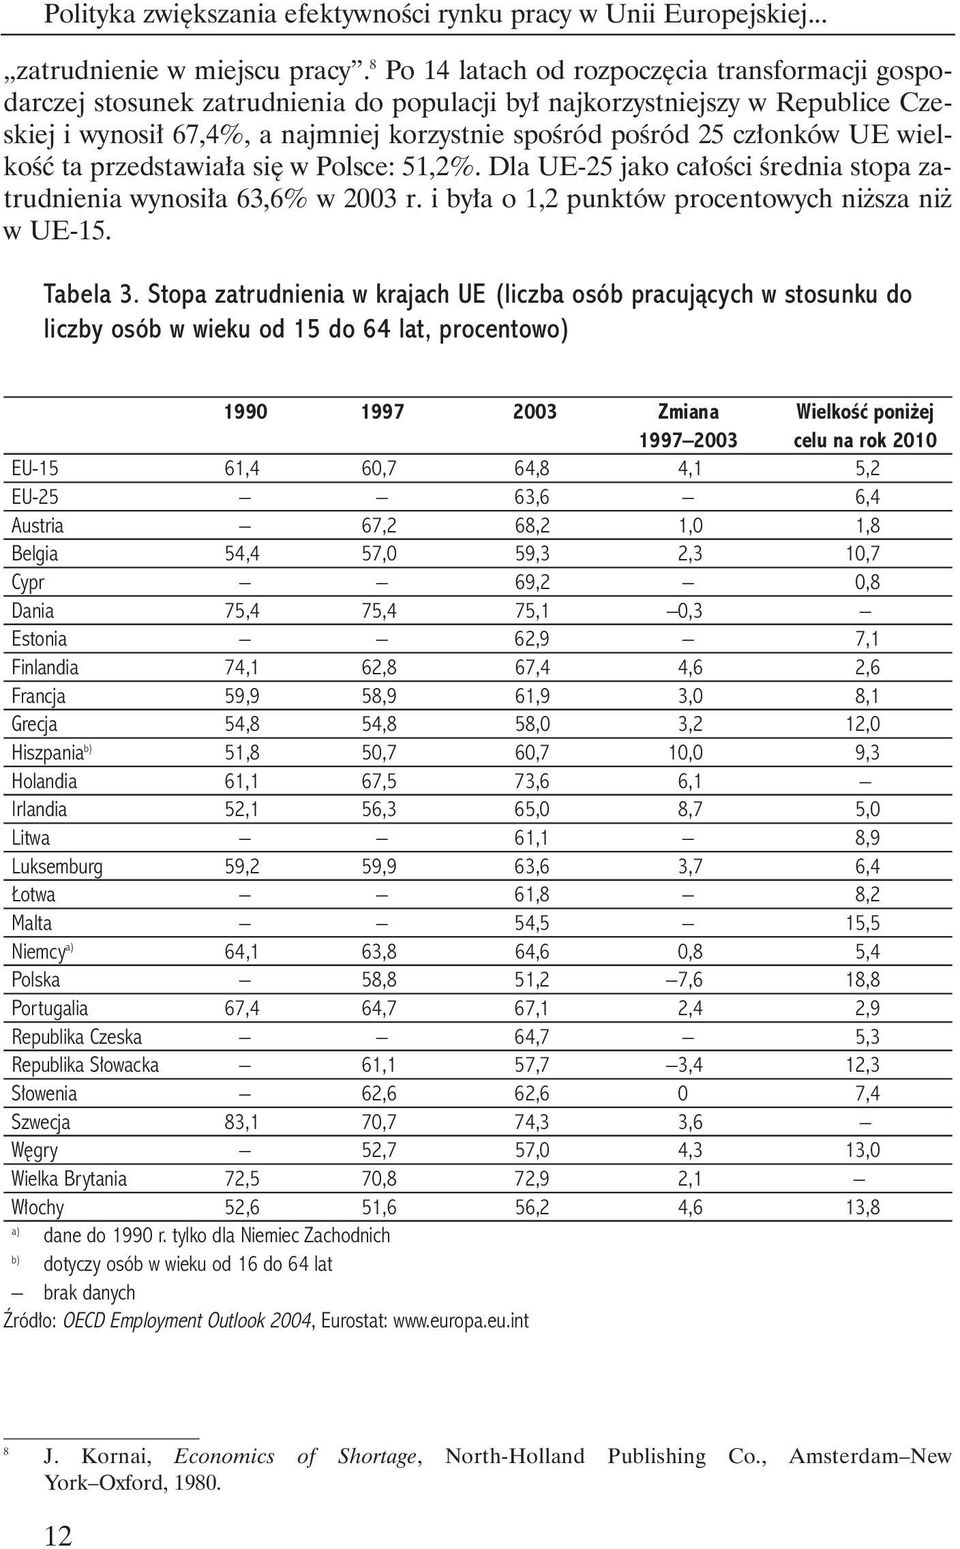 UE wielkoêç ta przedstawia a si w Polsce: 51,2%. Dla UE-25 jako ca oêci Êrednia stopa zatrudnienia wynosi a 63,6% w 2003 r. i by a o 1,2 punktów procentowych ni sza ni w UE-15. Tabela 3.